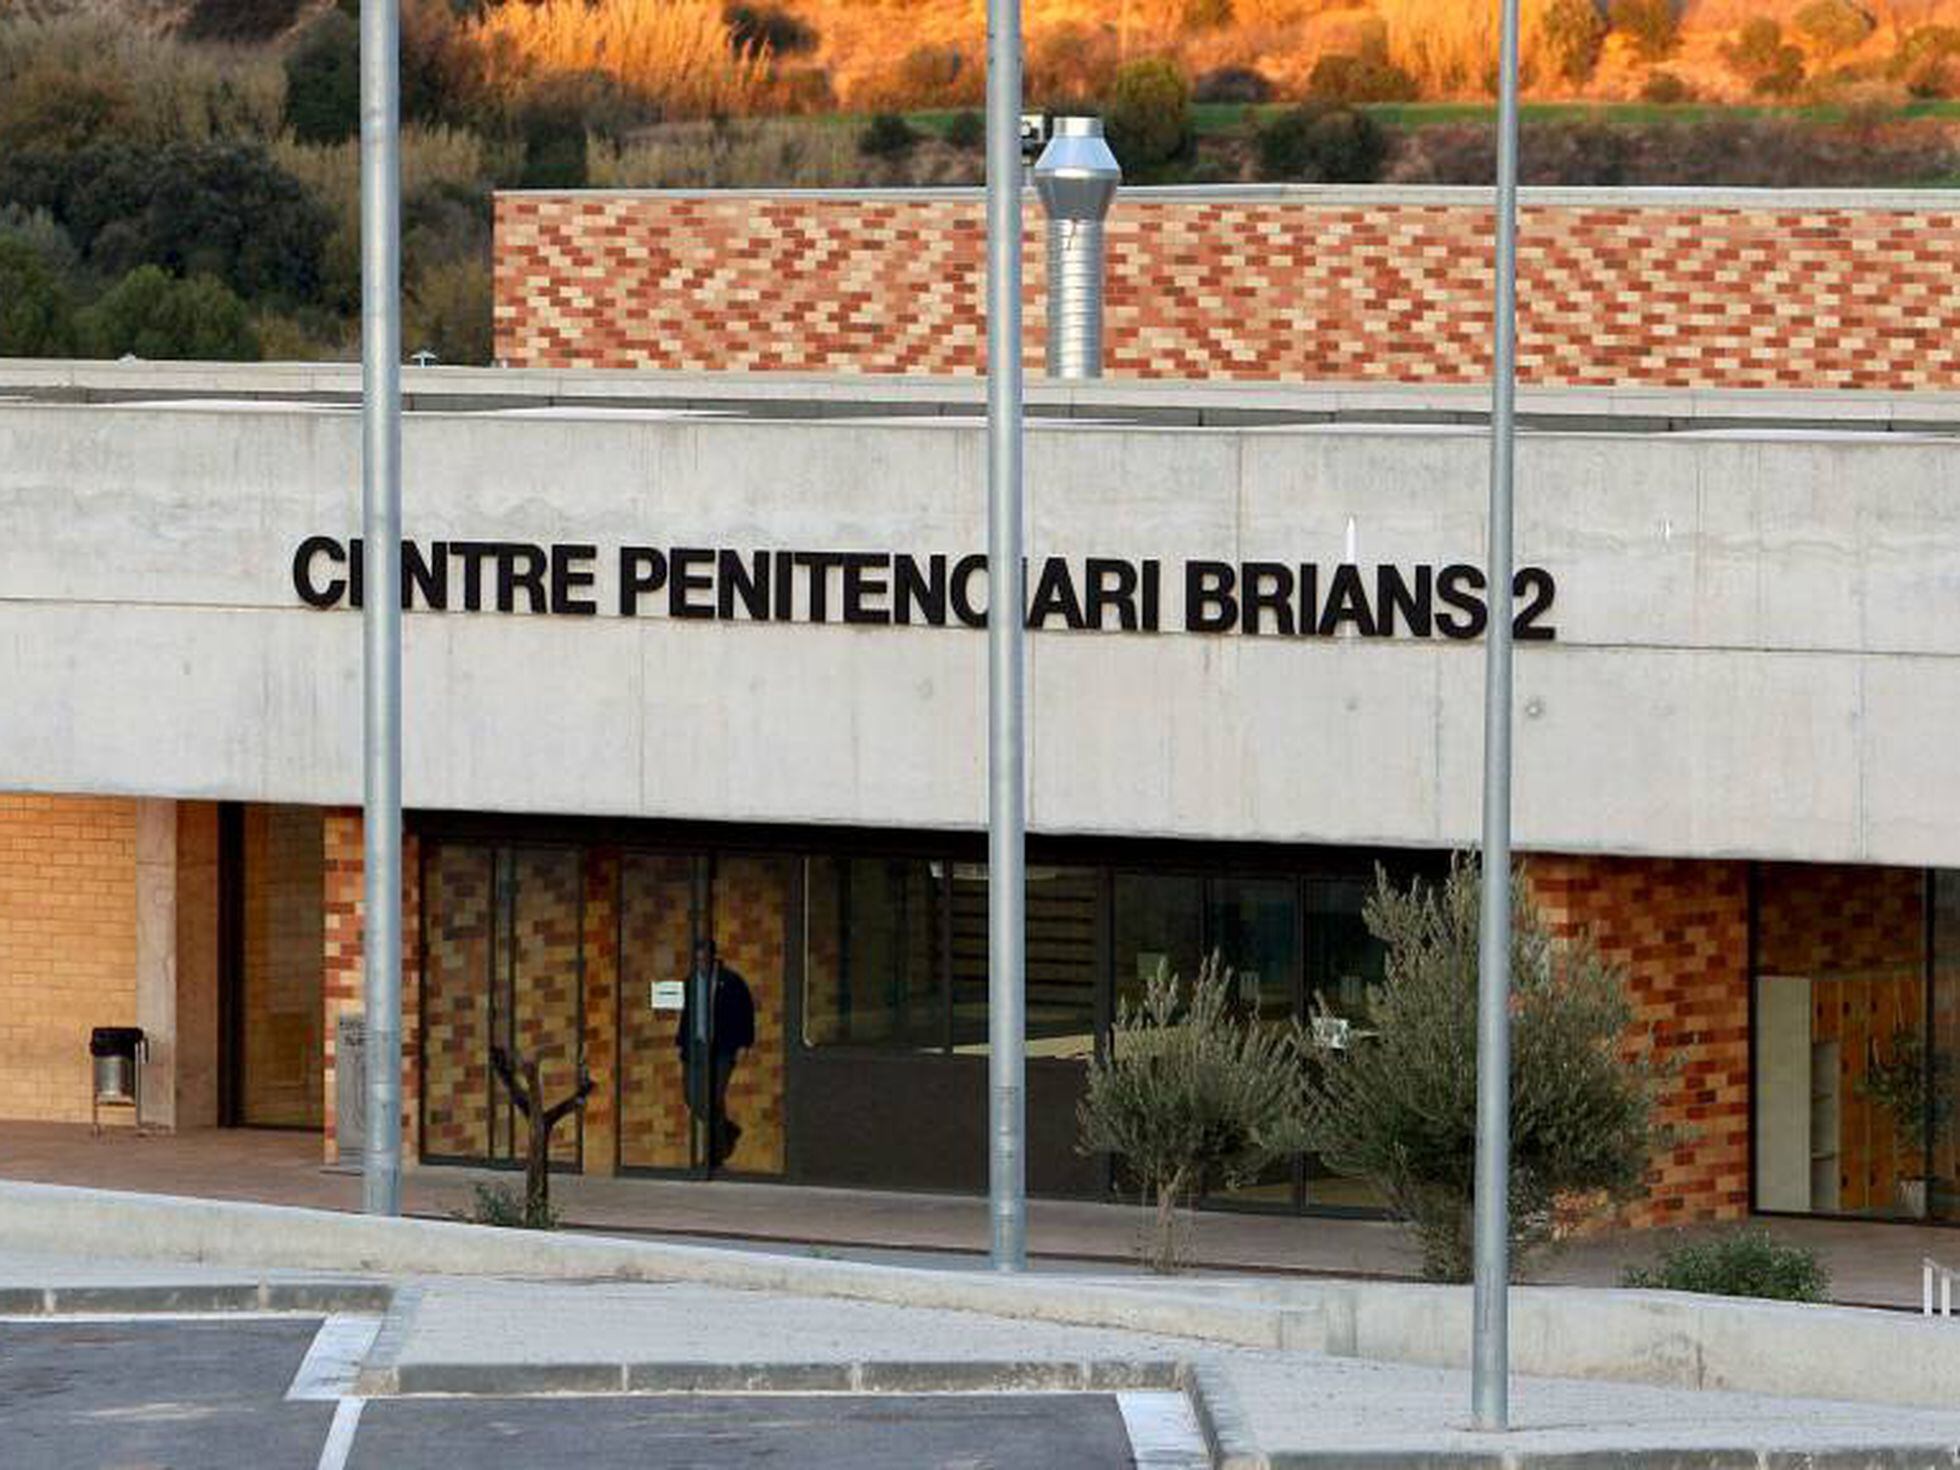 La Generalitat confina la prisión Brians 2 tras un brote de coronavirus con  un centenar de positivos | Cataluña | EL PAÍS